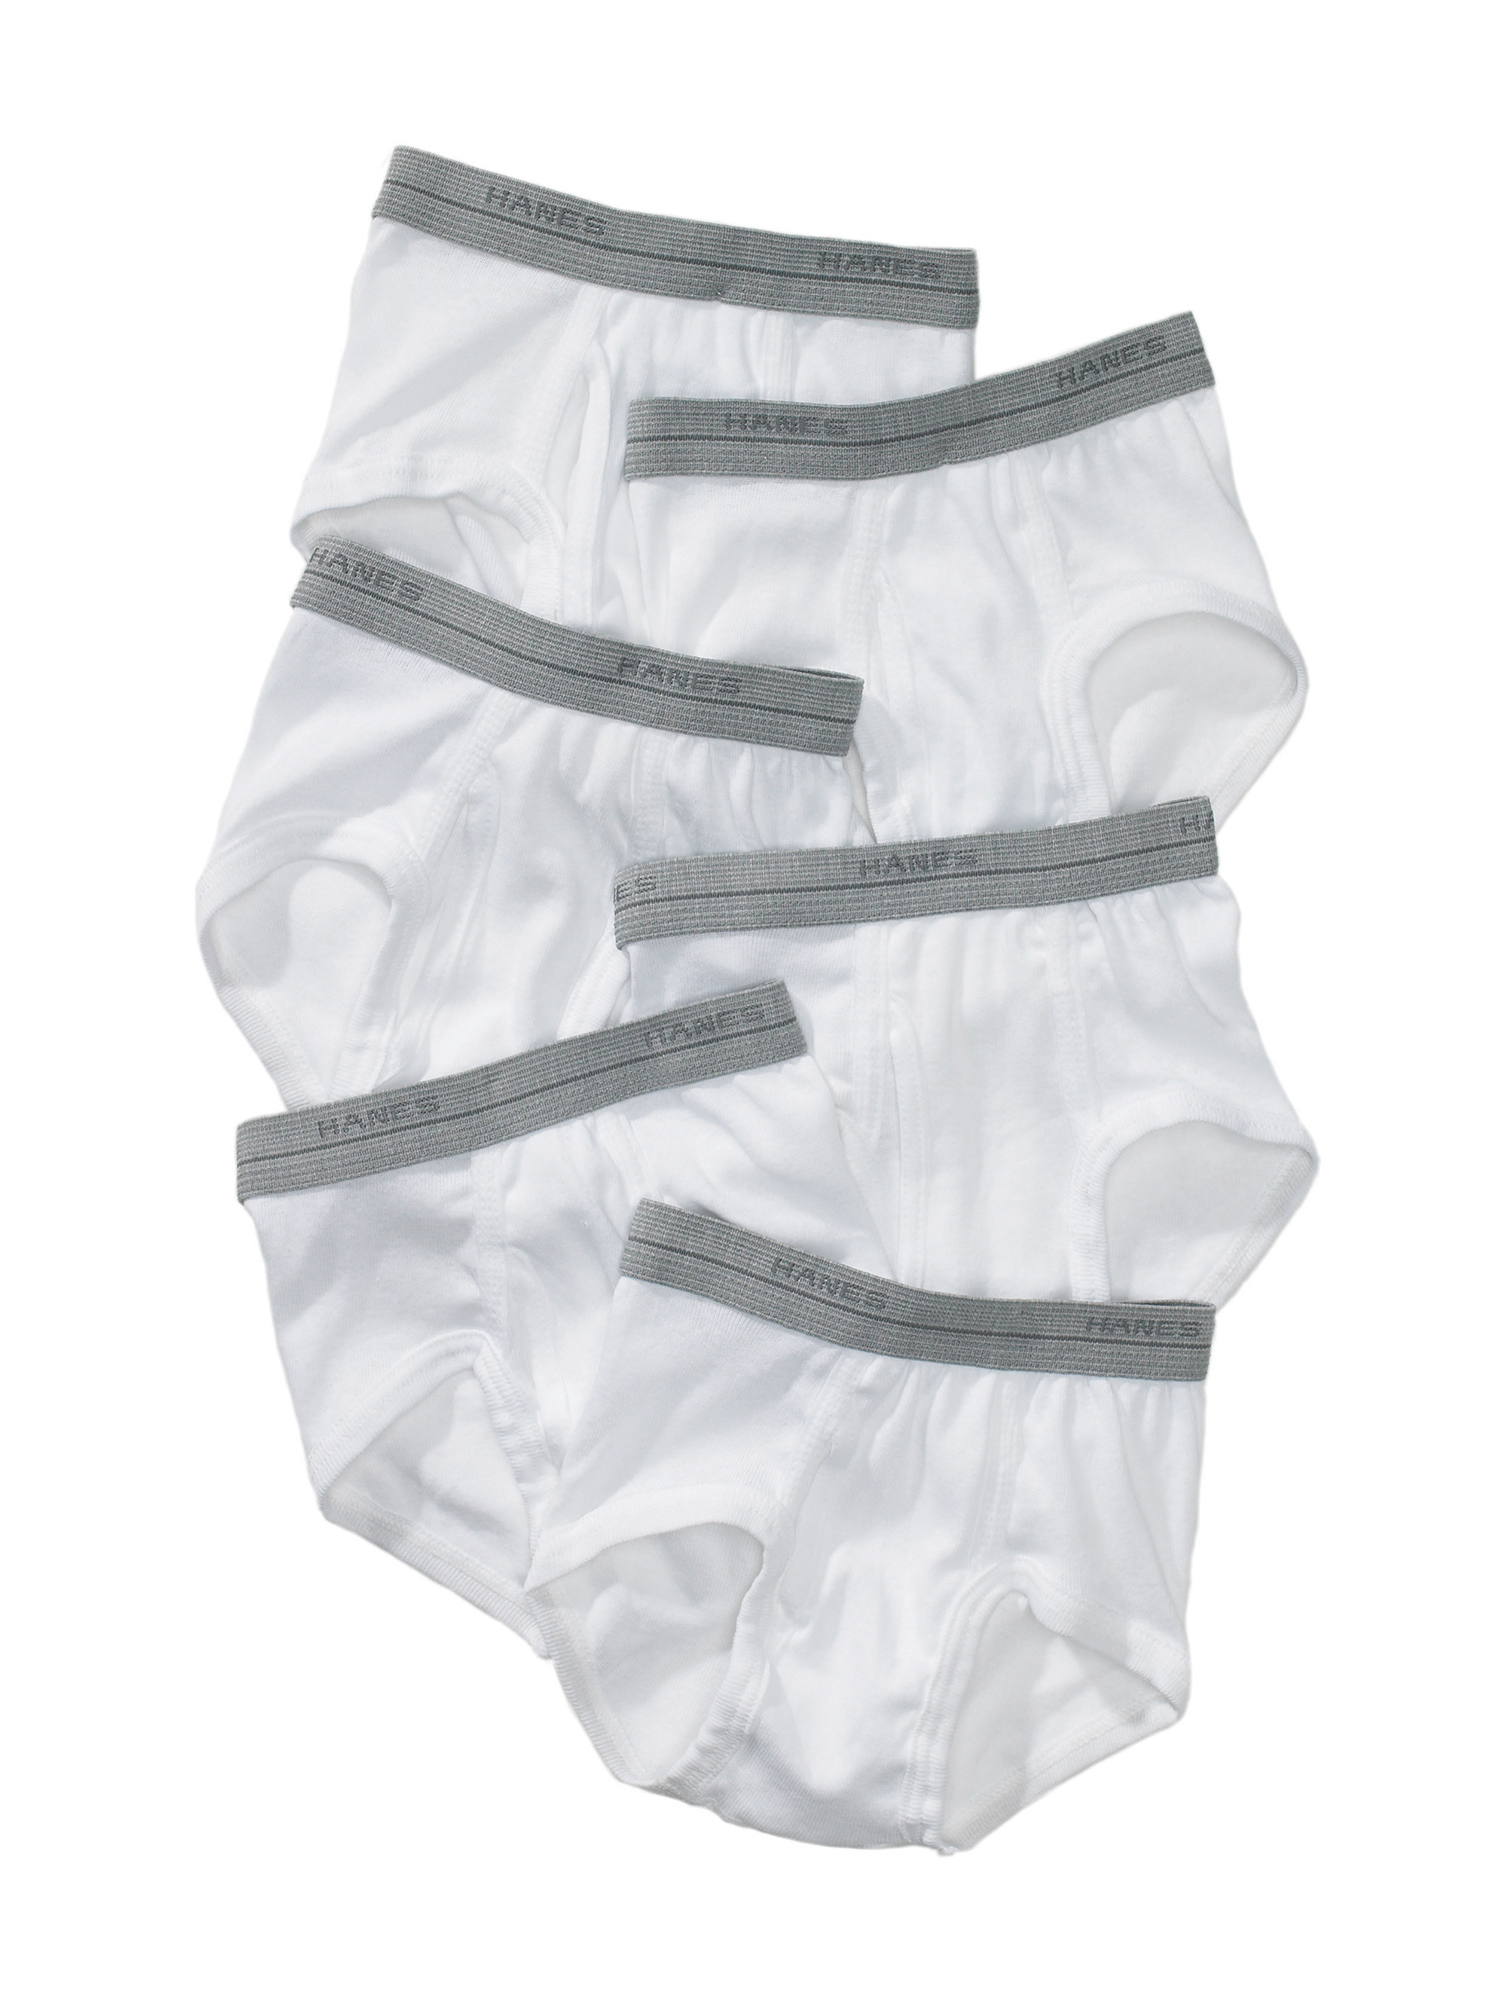 Hanes Toddler Boy Brief Underwear, 6 Pack, Sizes 6M-5T - image 1 of 2